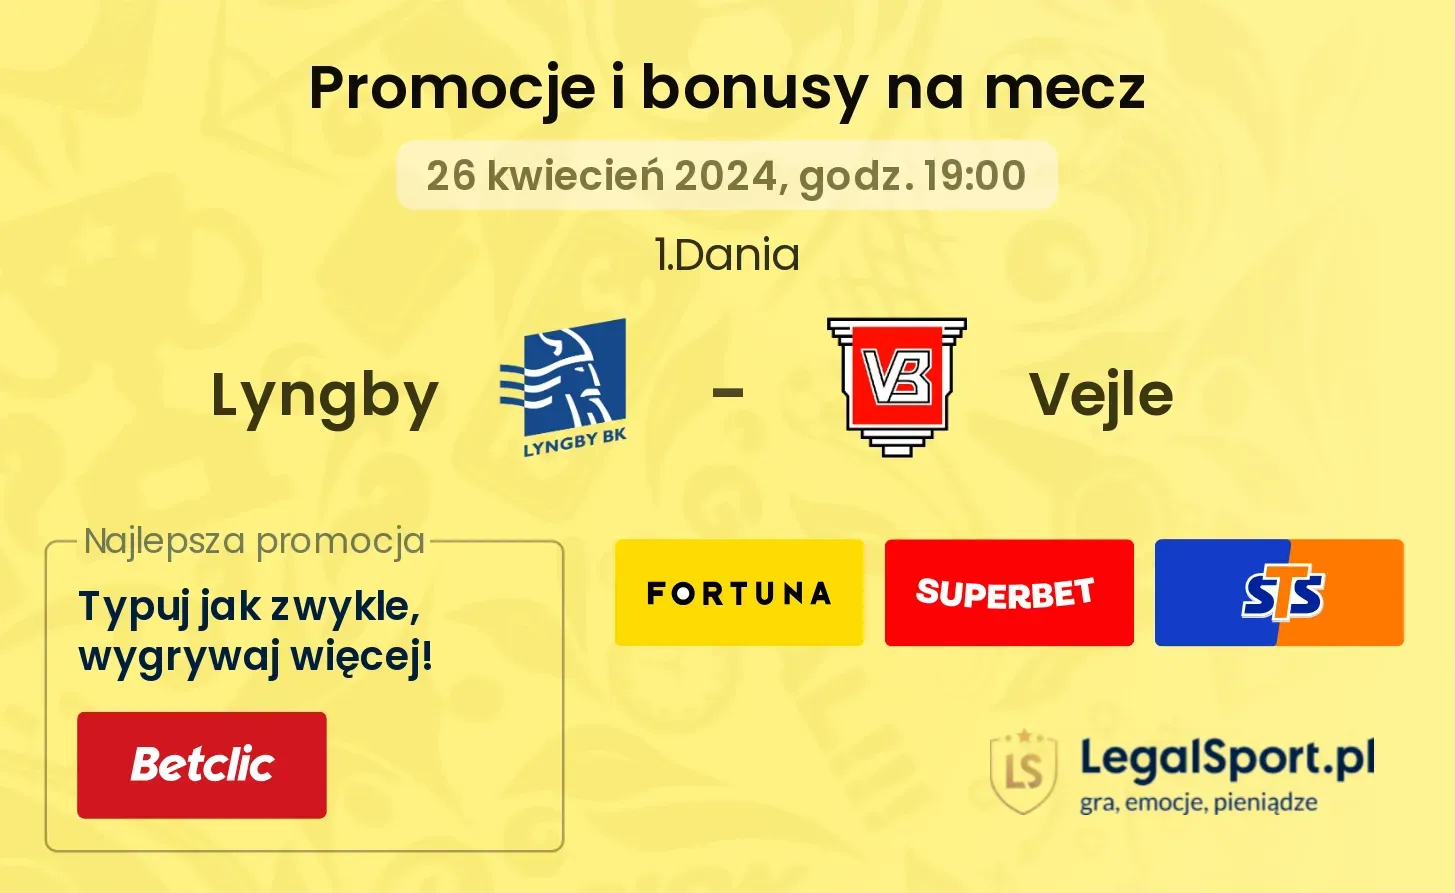 Lyngby - Vejle promocje bonusy na mecz